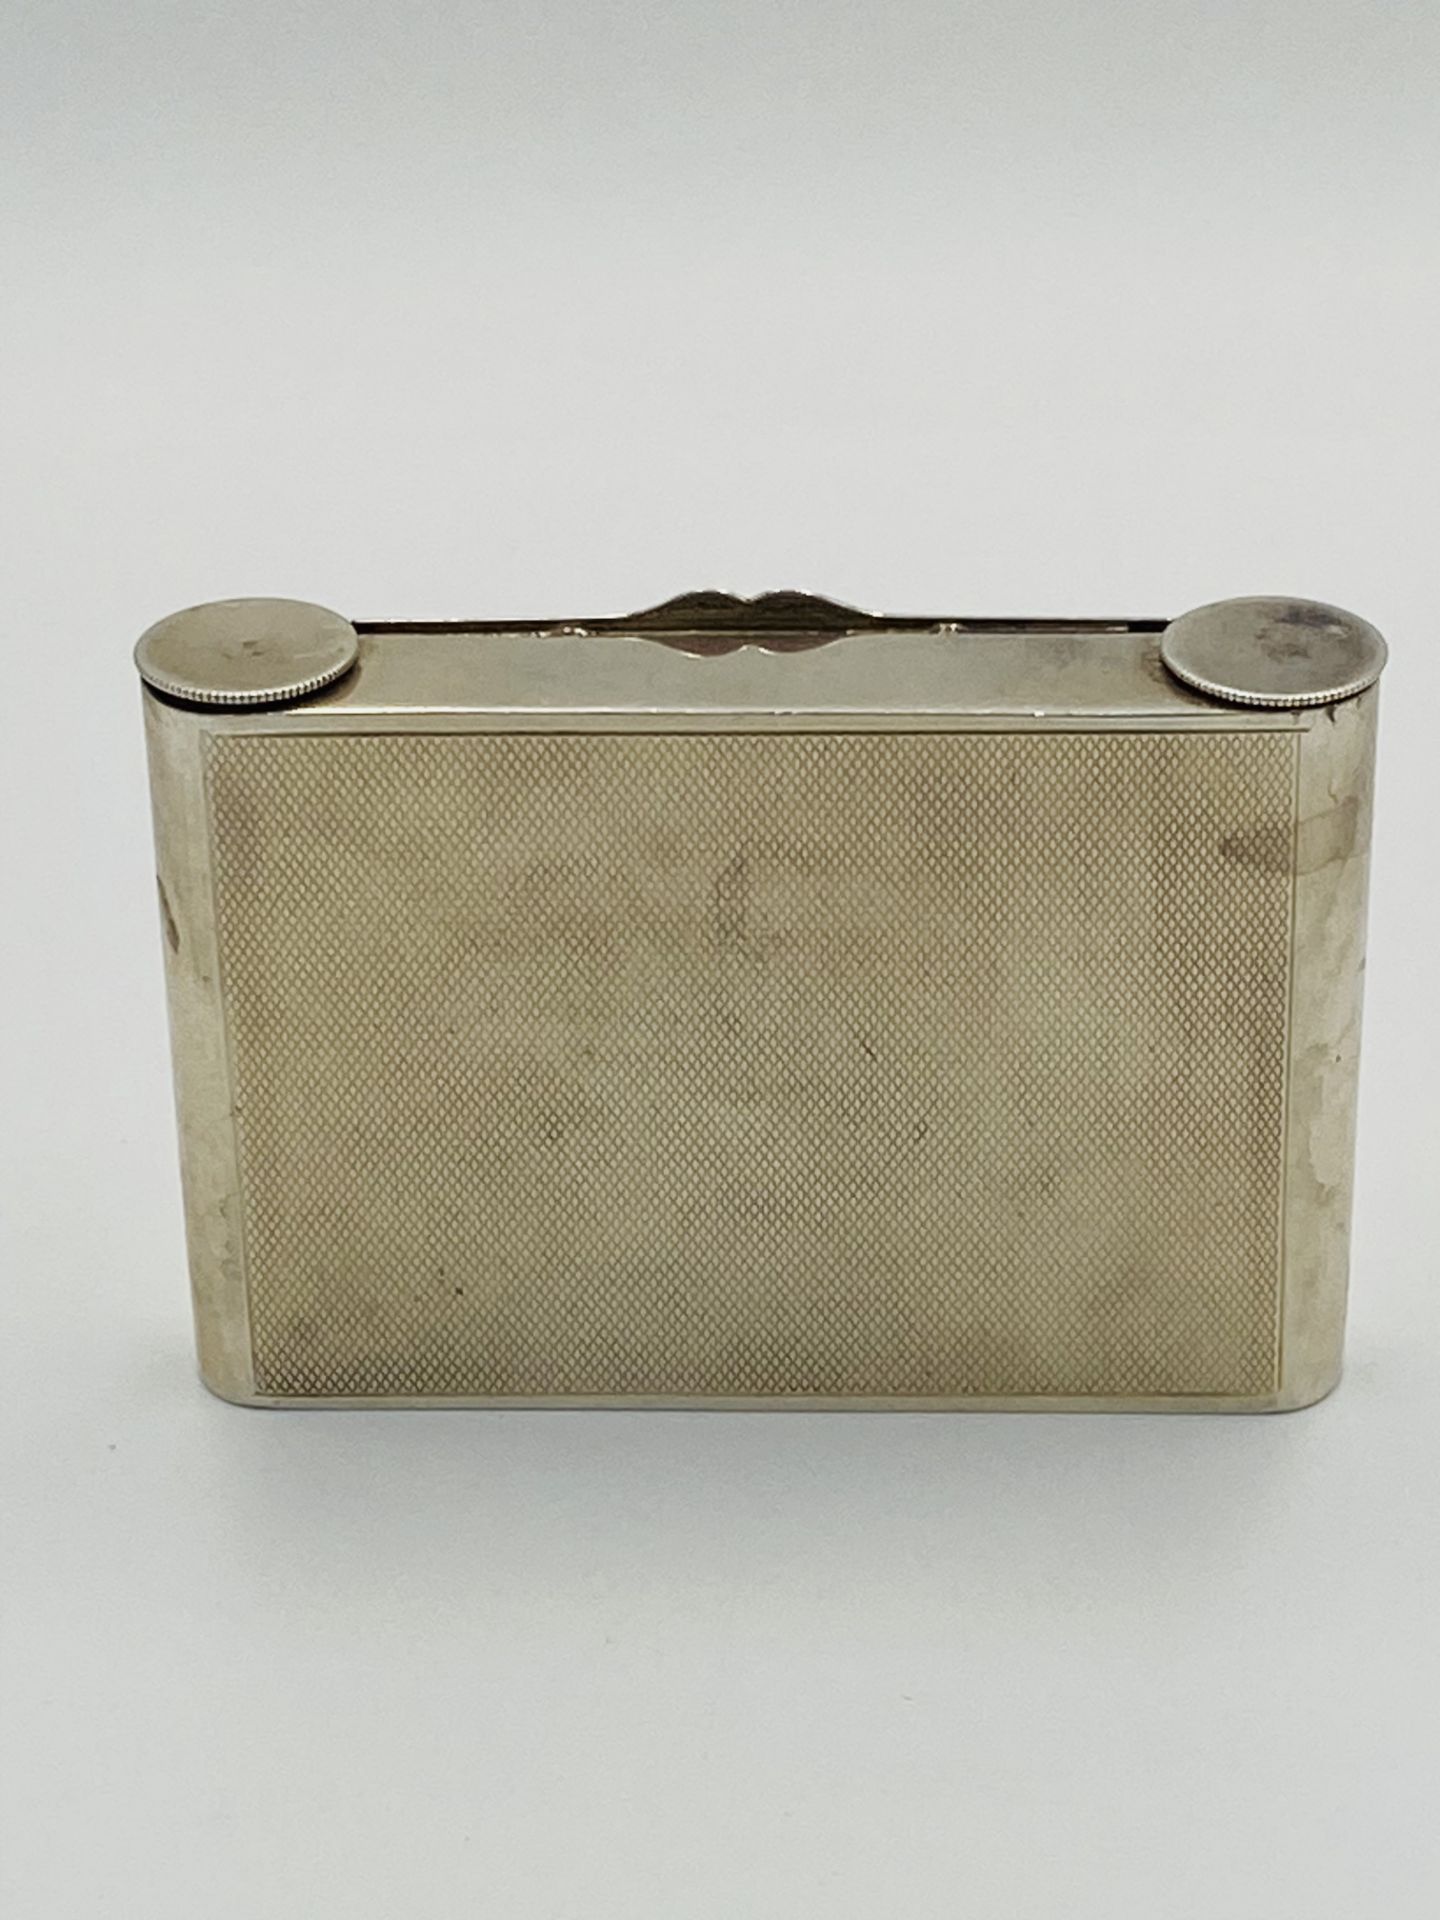 Silver case by Deakin & Francis, Birmingham 1934 - Image 5 of 5